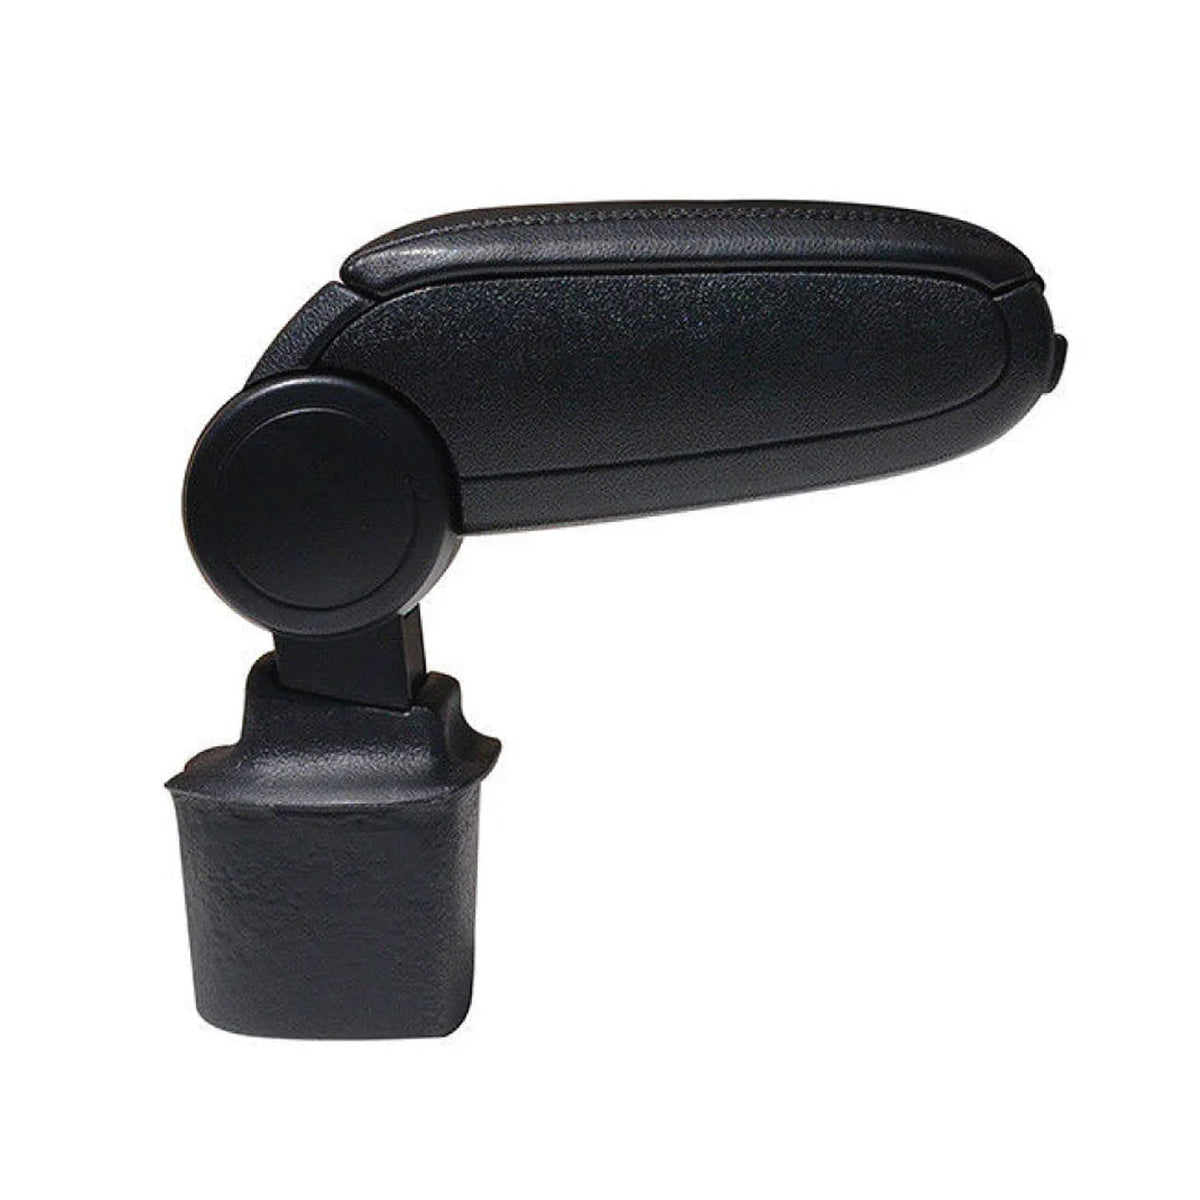 Center armrest armrest center console for Nissan Juke 2010-2019 PU leather black